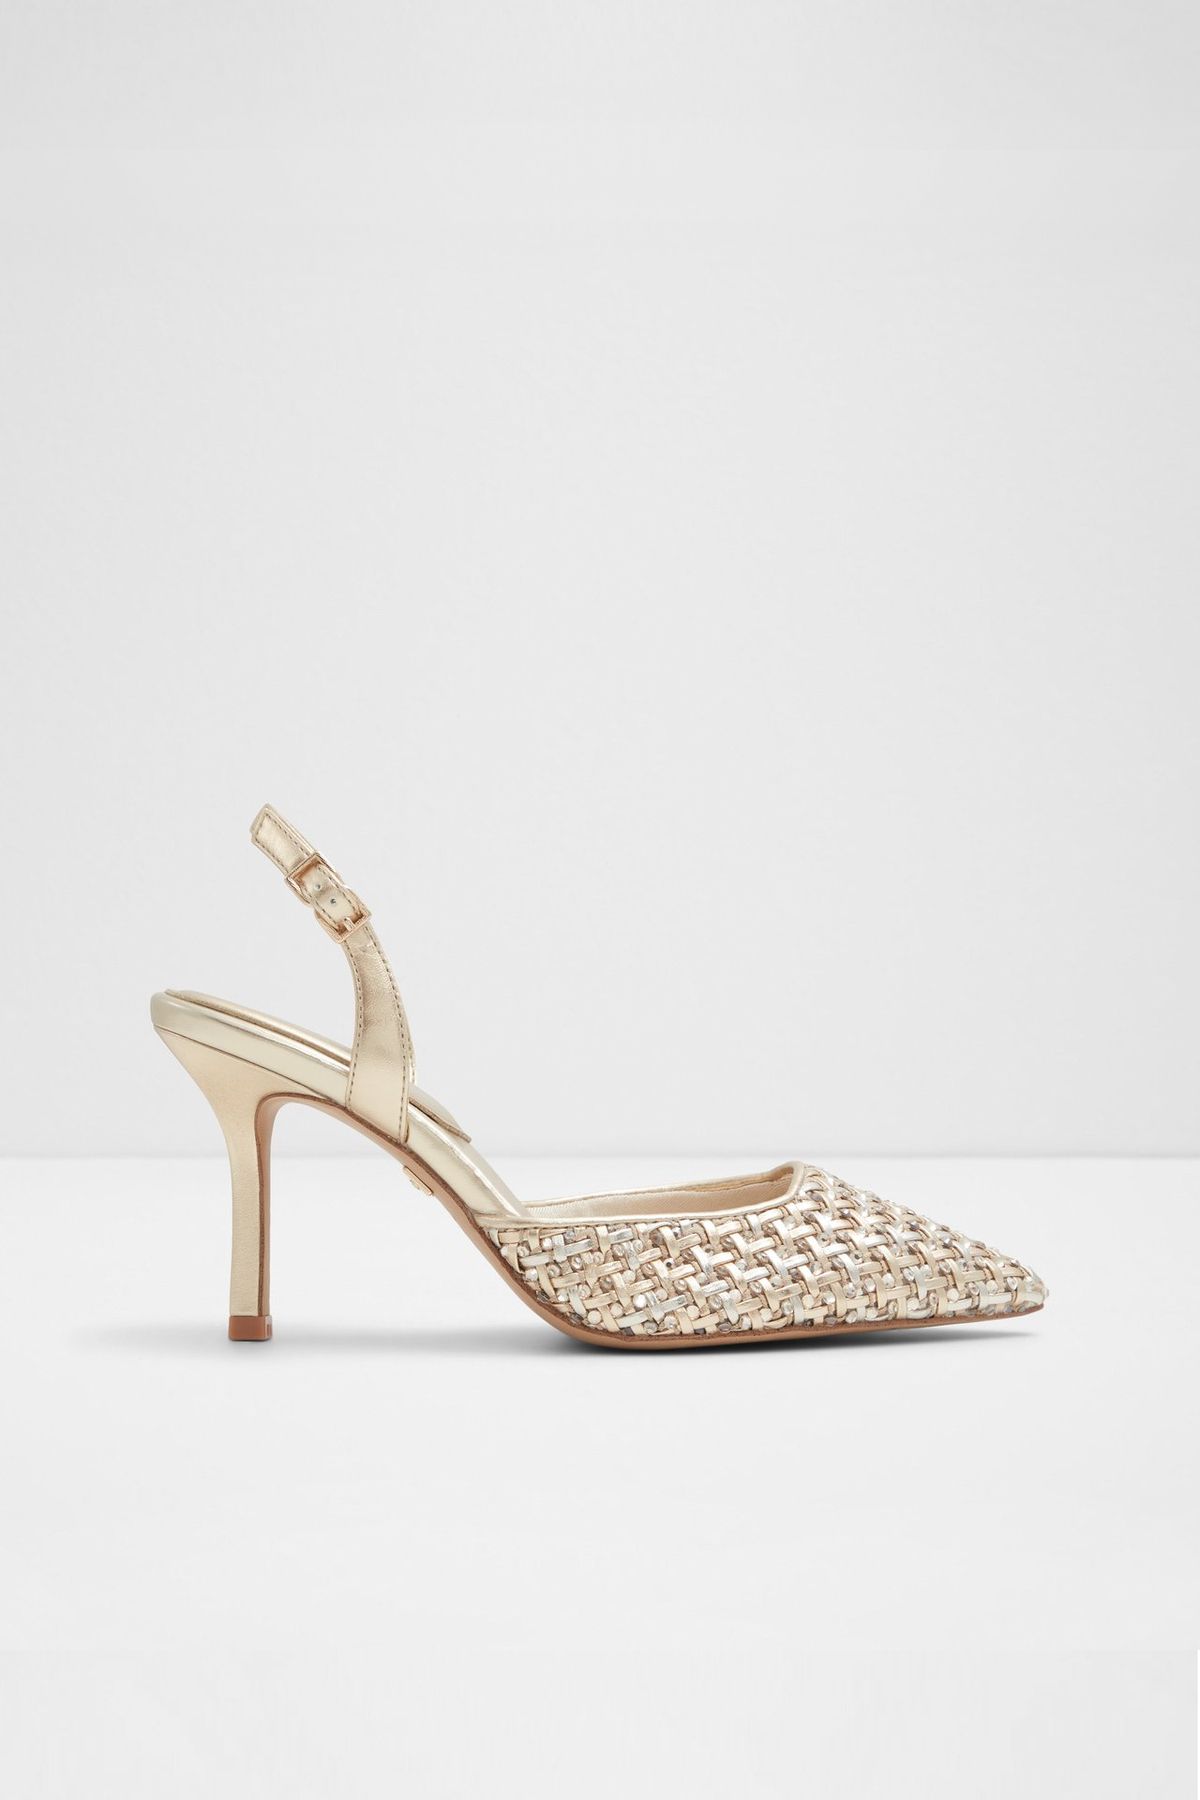 Aldo ELEONORE - Gold Kadın Topuklu Ayakkabı